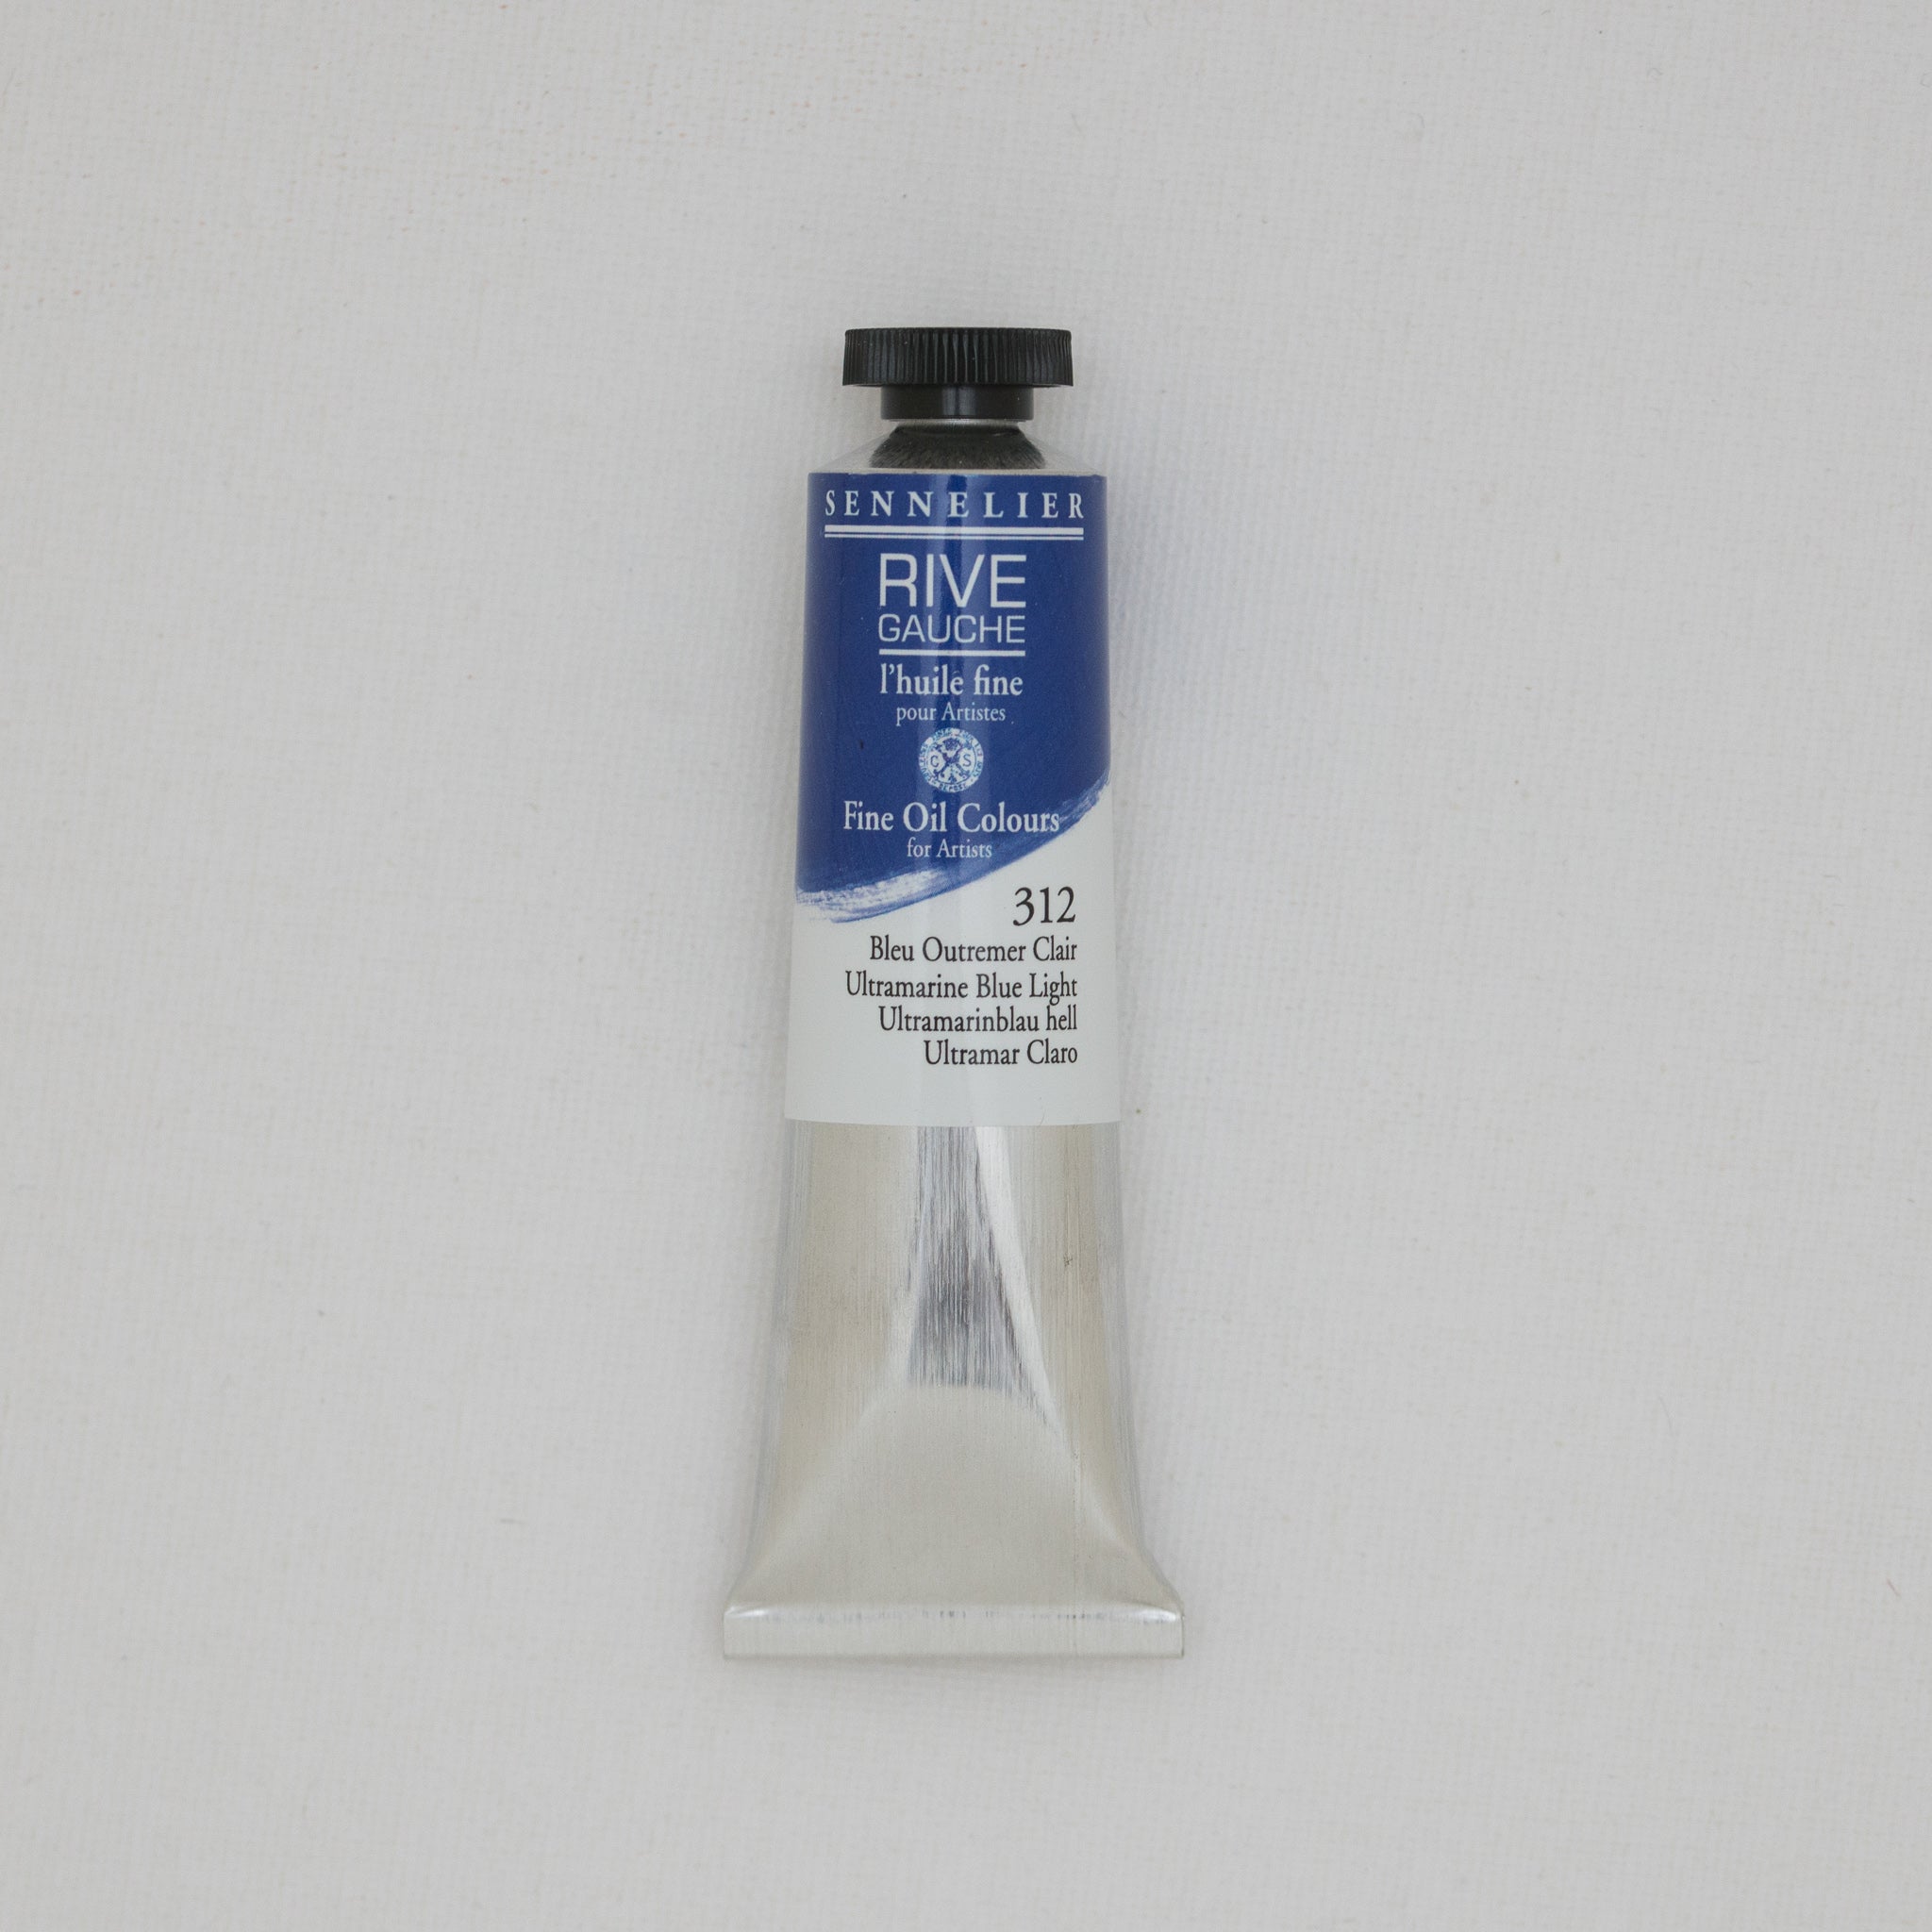 Sennelier Rive Gauche Oil Paints - Melbourne Etching Supplies